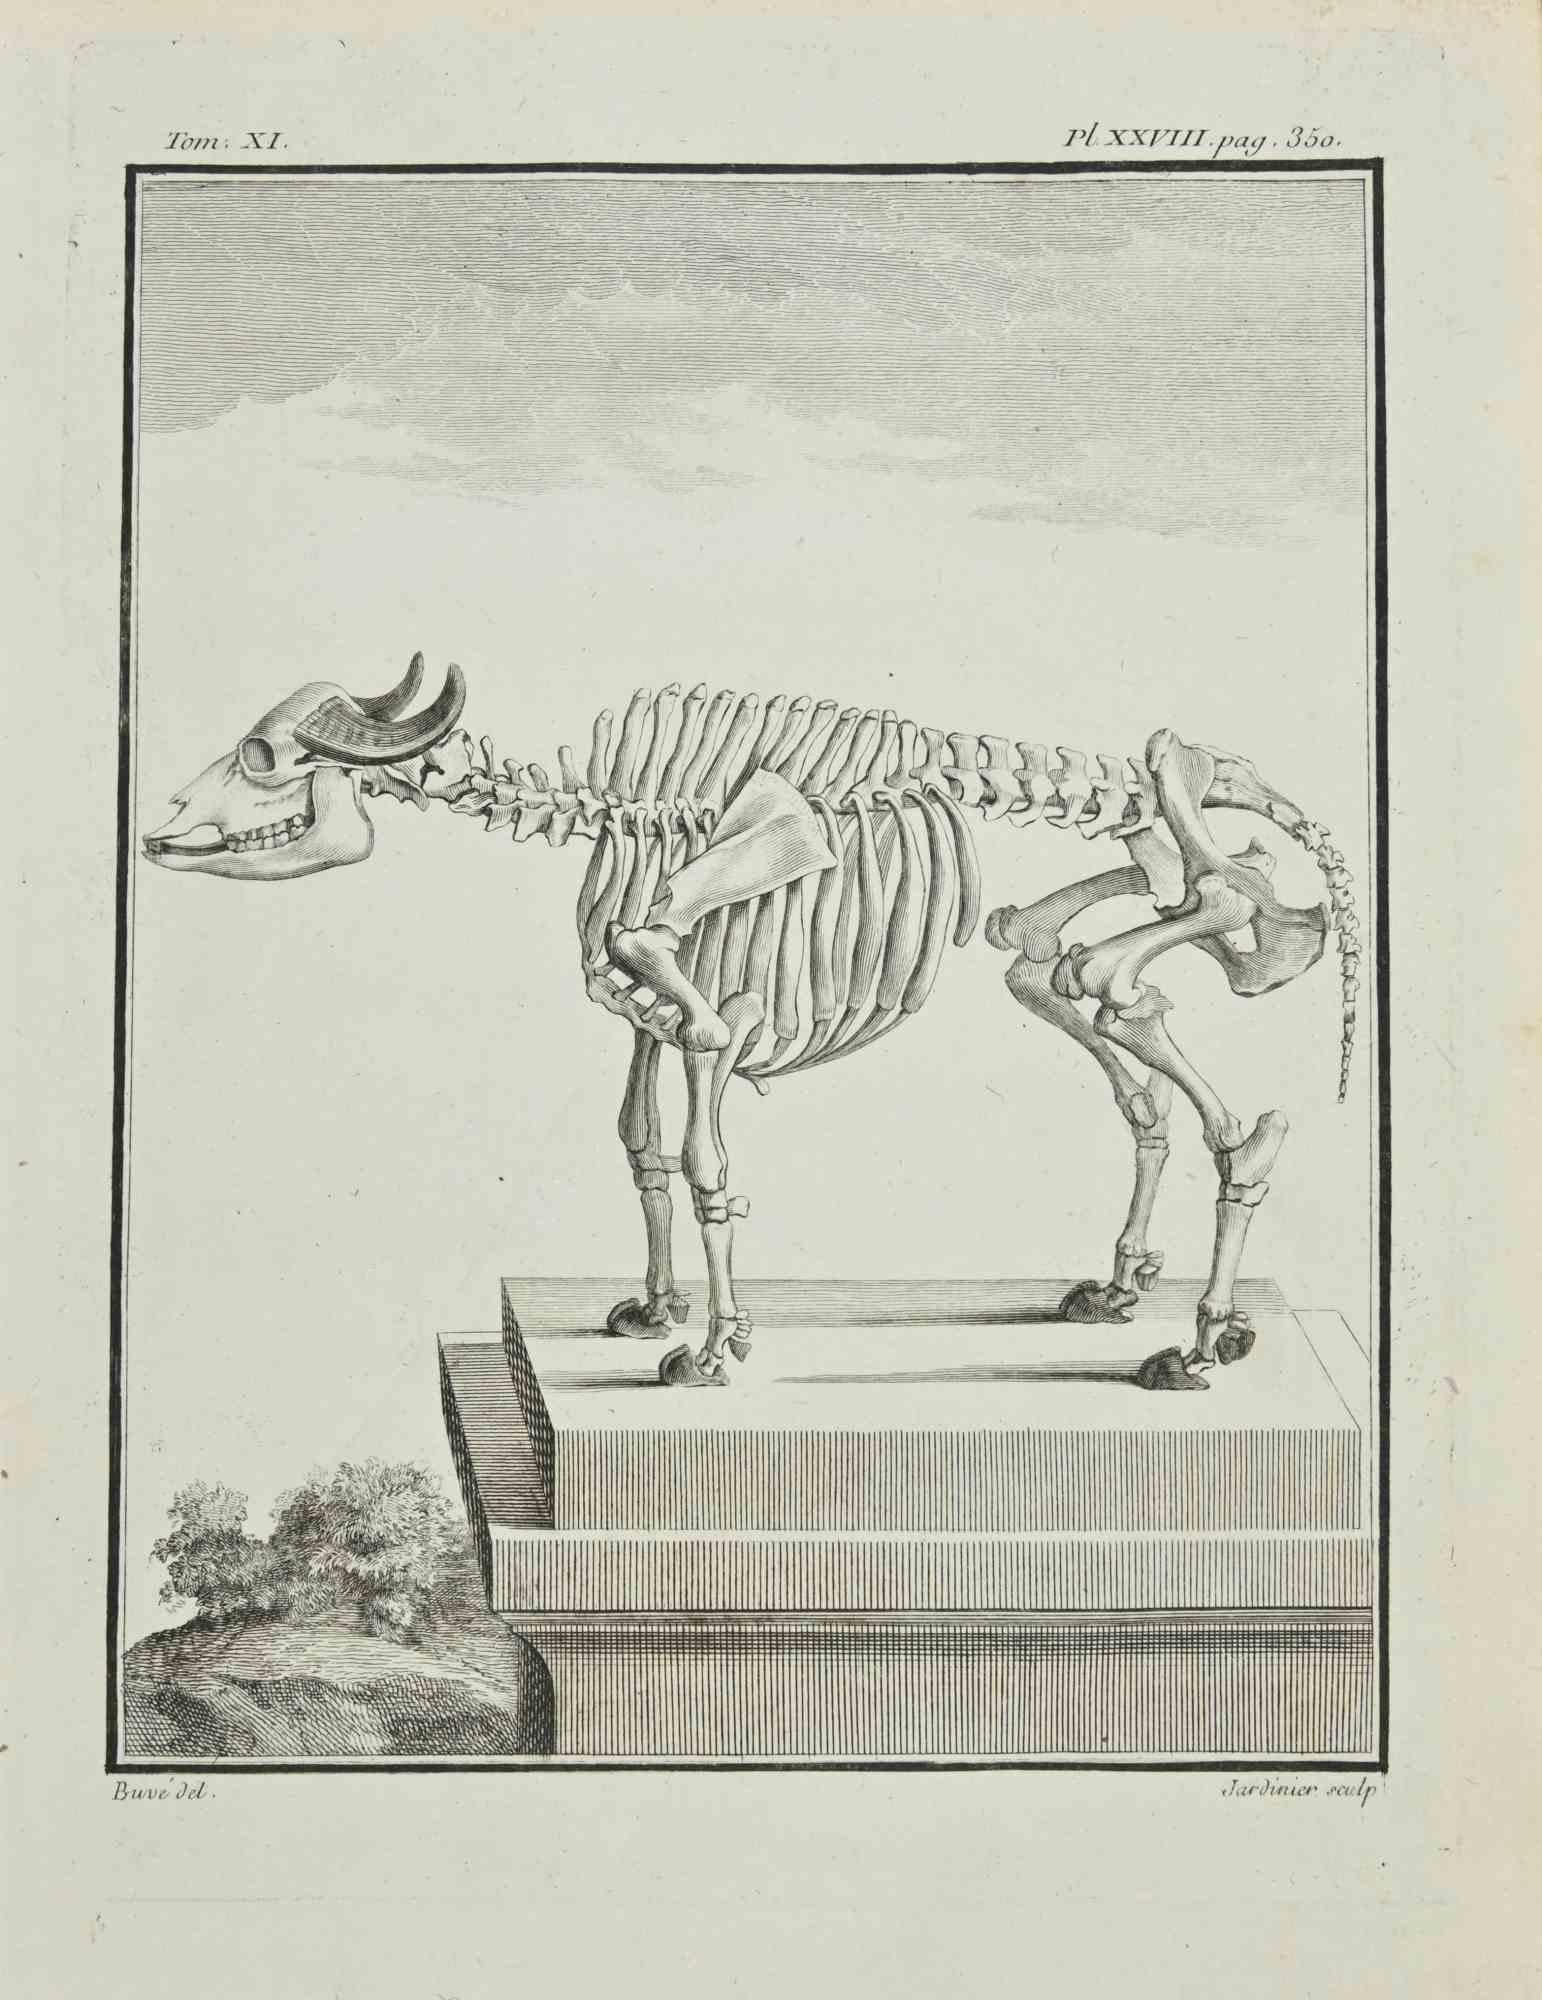 Le Squelette est une eau-forte réalisée en 1771 par Claude Jardinier.

Signé sur la plaque.

L'oeuvre appartient à la suite "Histoire naturelle, générale et particulière avec la description du Cabinet du Roi". Paris : Imprimerie Royale, 1749-1771.